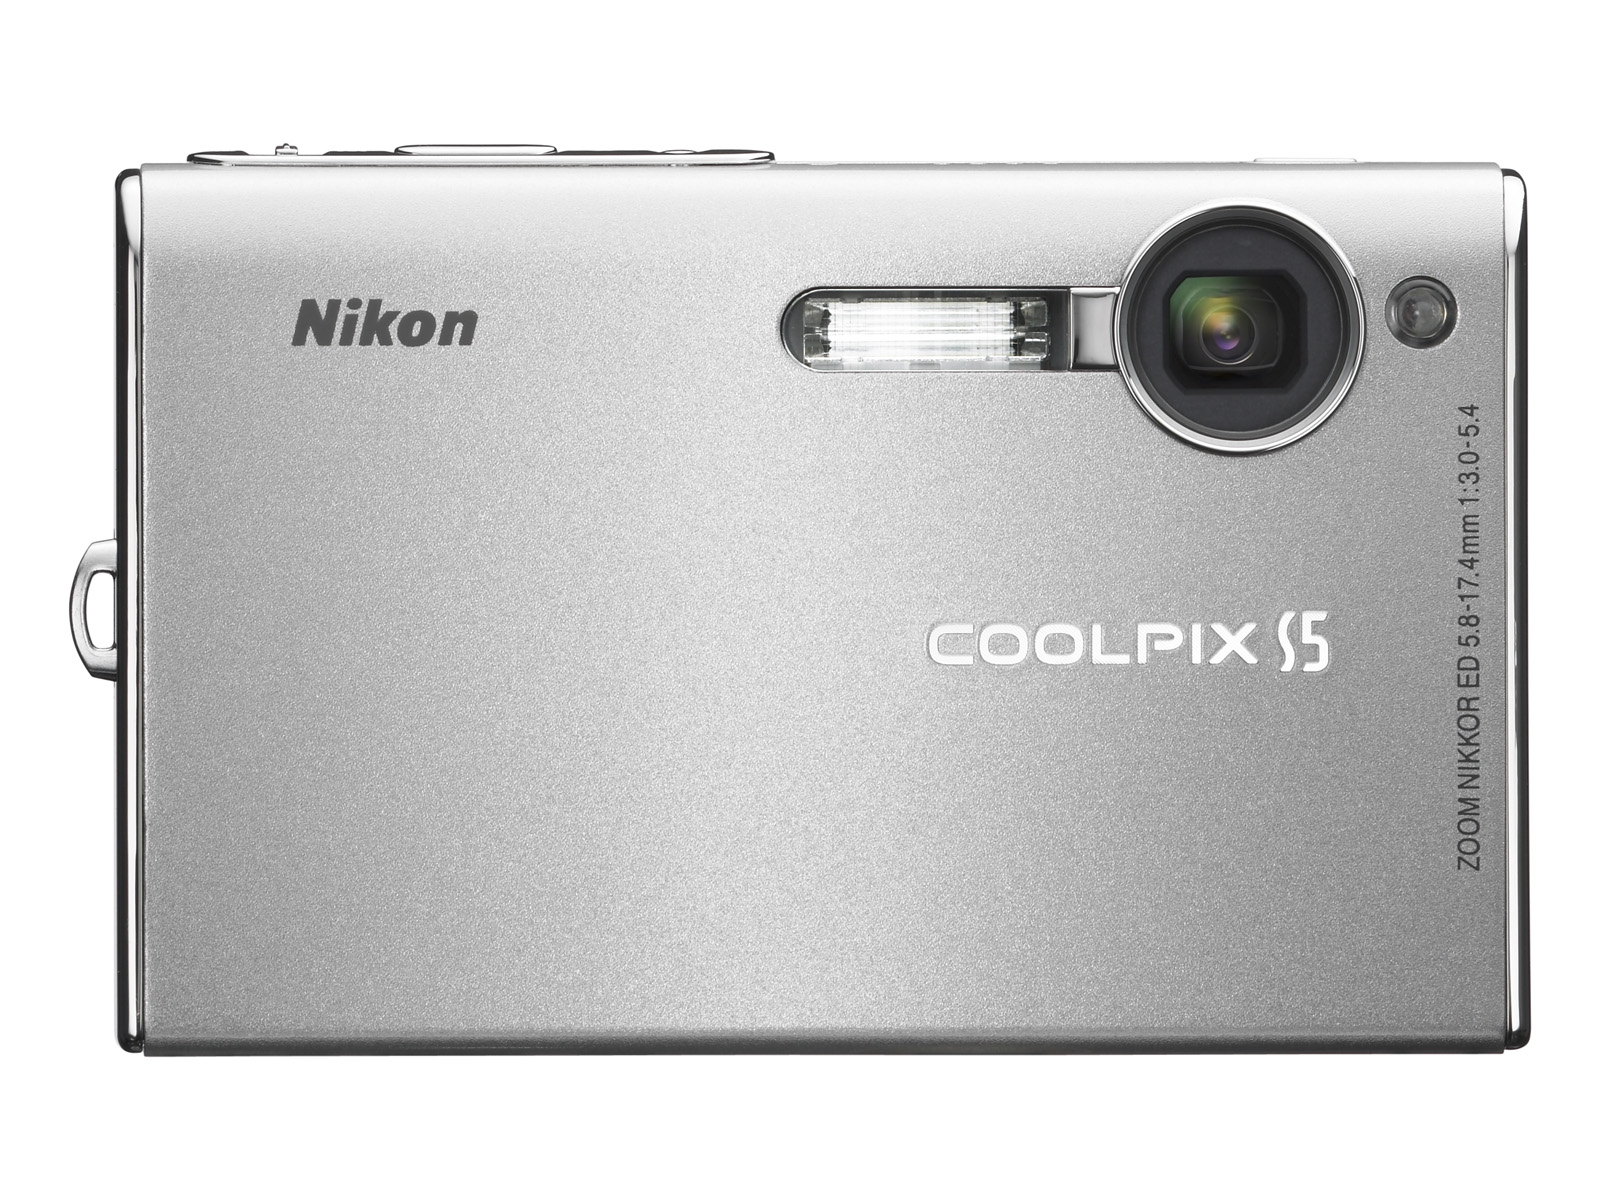 Nikon Coolpix S5 Digital Camera